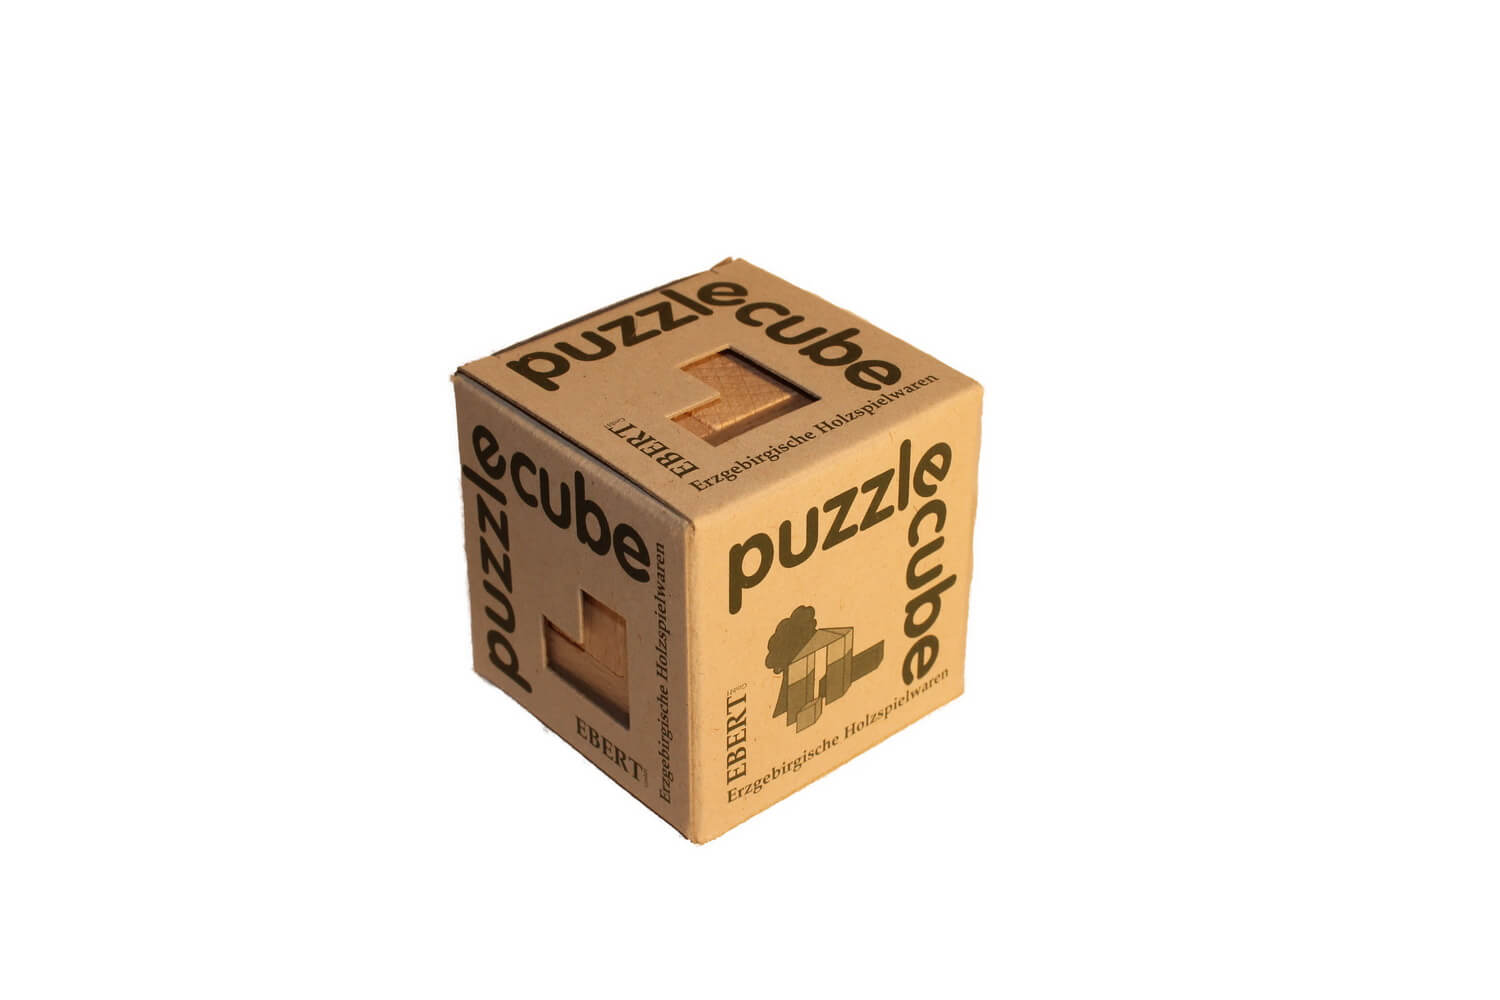 Puzzle cube ist ein Puzzle-Würfel. Es handelt sich um eine Art mechanisches Puzzle in kubischer Form. Eingestuft wird dieser als Sektionsrätsel. Das bedeutet …